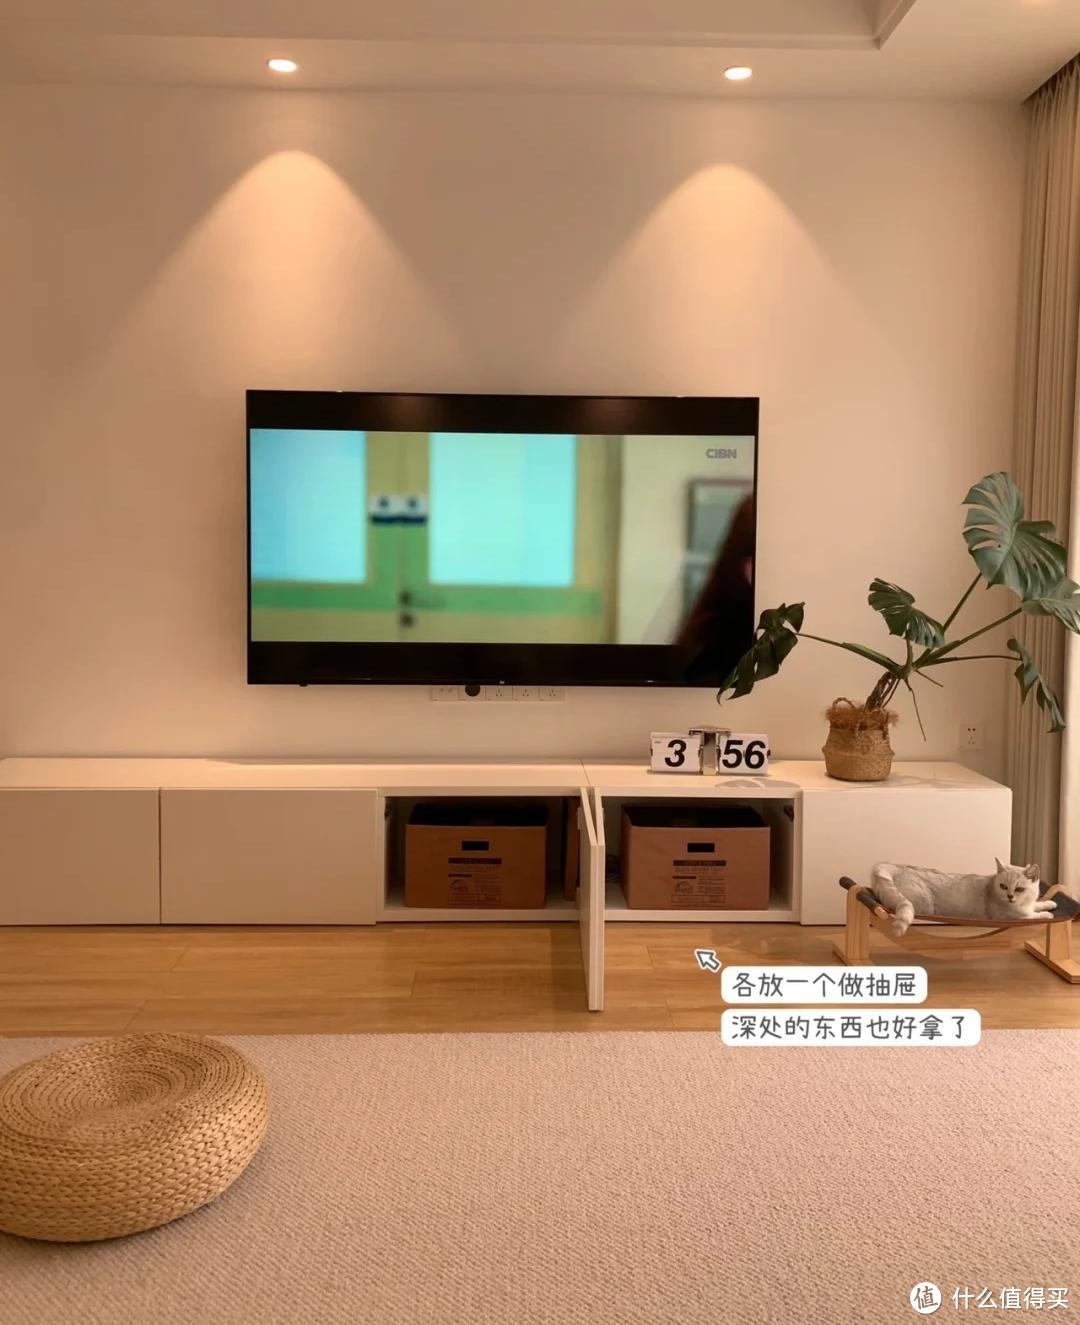 重庆一夫妻的新房火了，光一个电视墙就让无数人效仿，真有品味！